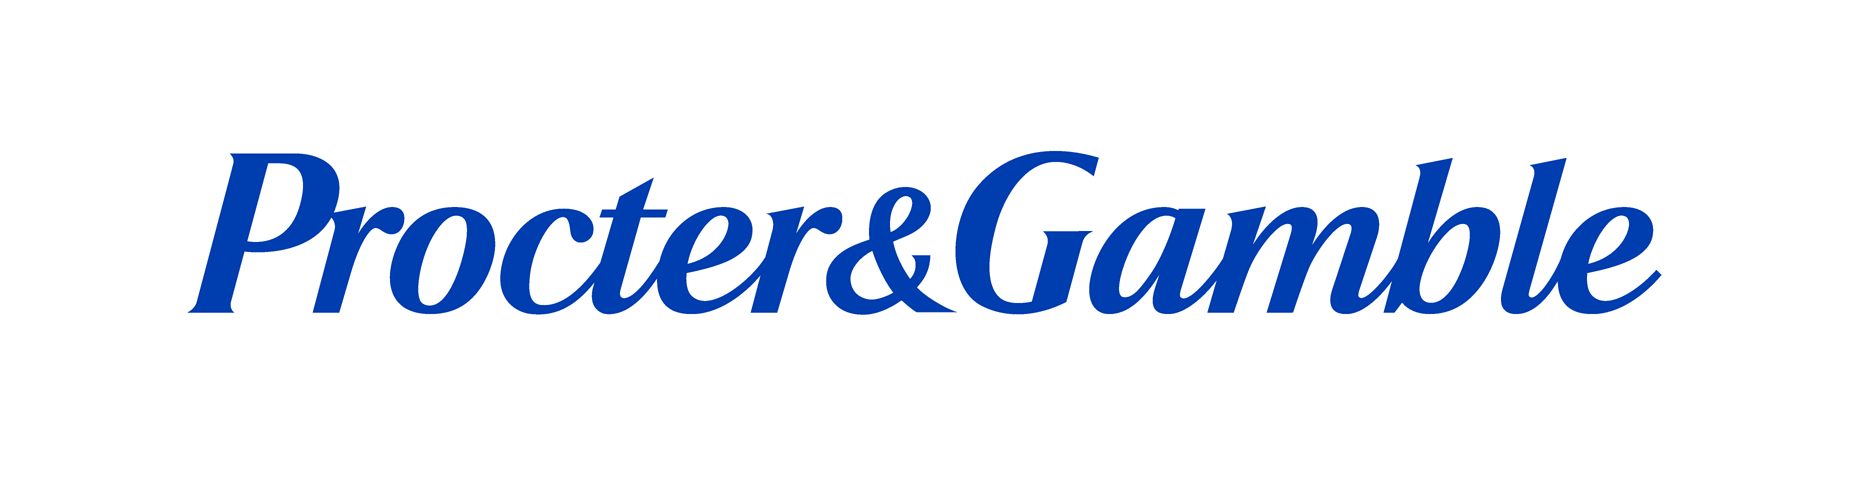 Procter and Gamble Logo - Procter and gamble Logos